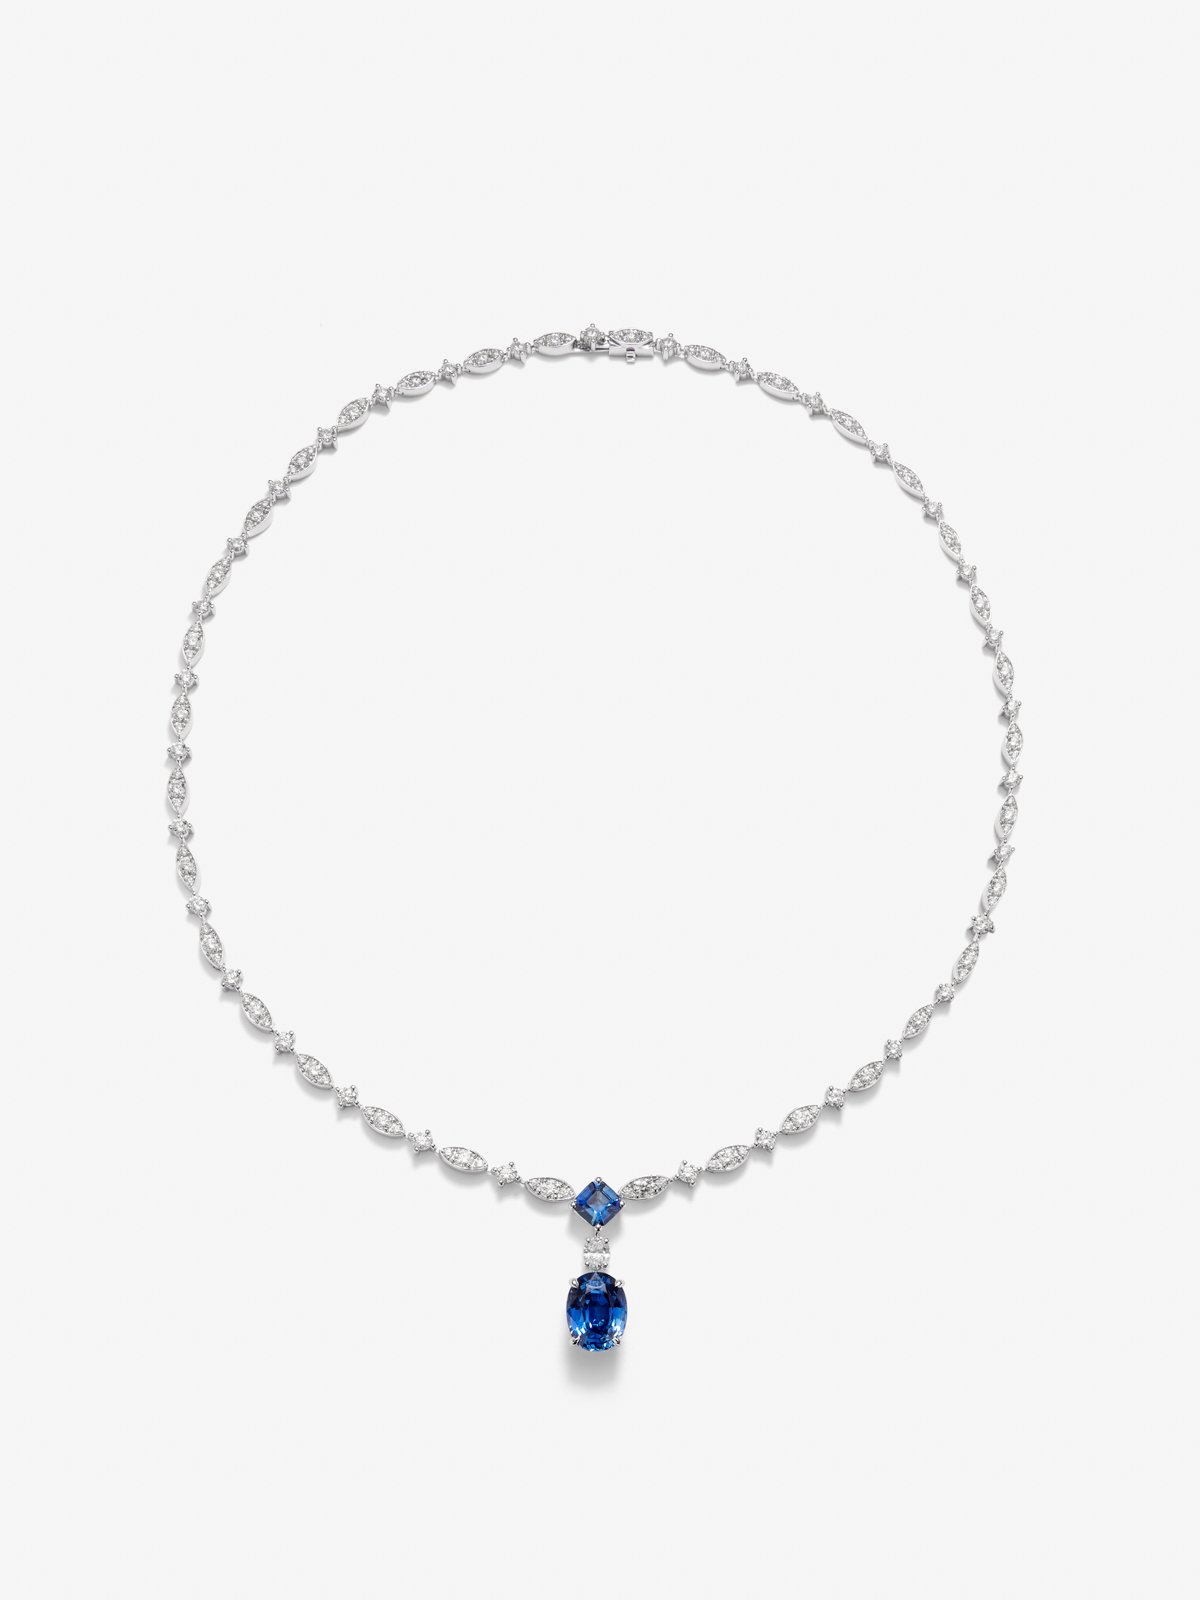 Collar de oro blanco de 18K con zafiro azul royal en talla oval de 5,05 cts, zafiros azules en talla octogonal 1,04 cts y diamantes blancos en talla X de 7,59 cts